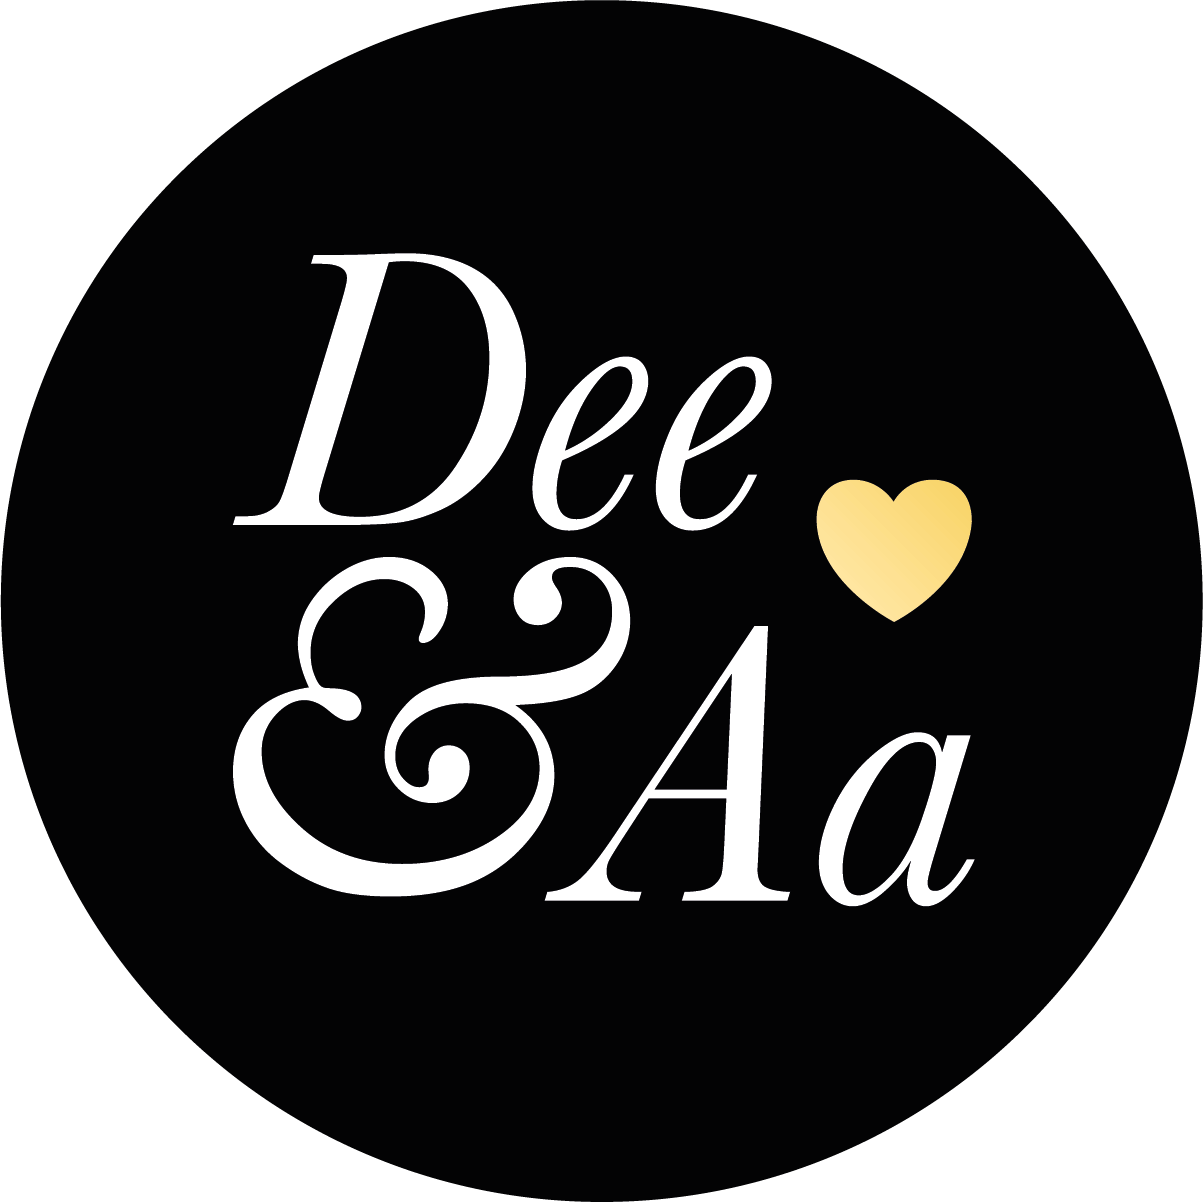 Dee&Aa